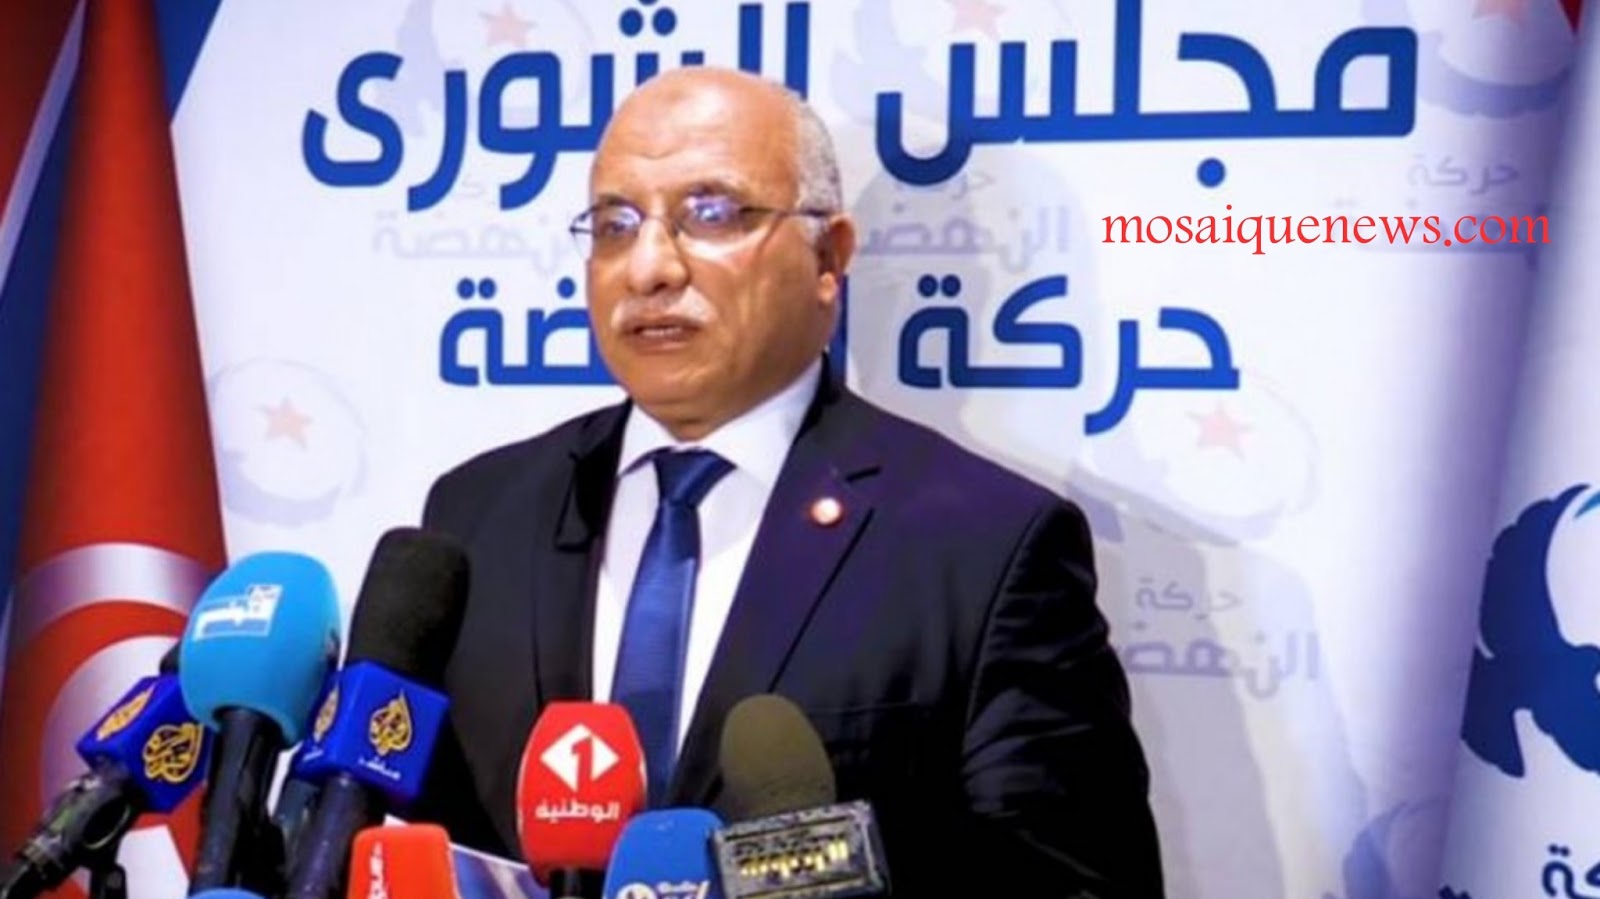 اعتقال مسؤول في جبهة النهضة يثير المعارضة في تونس